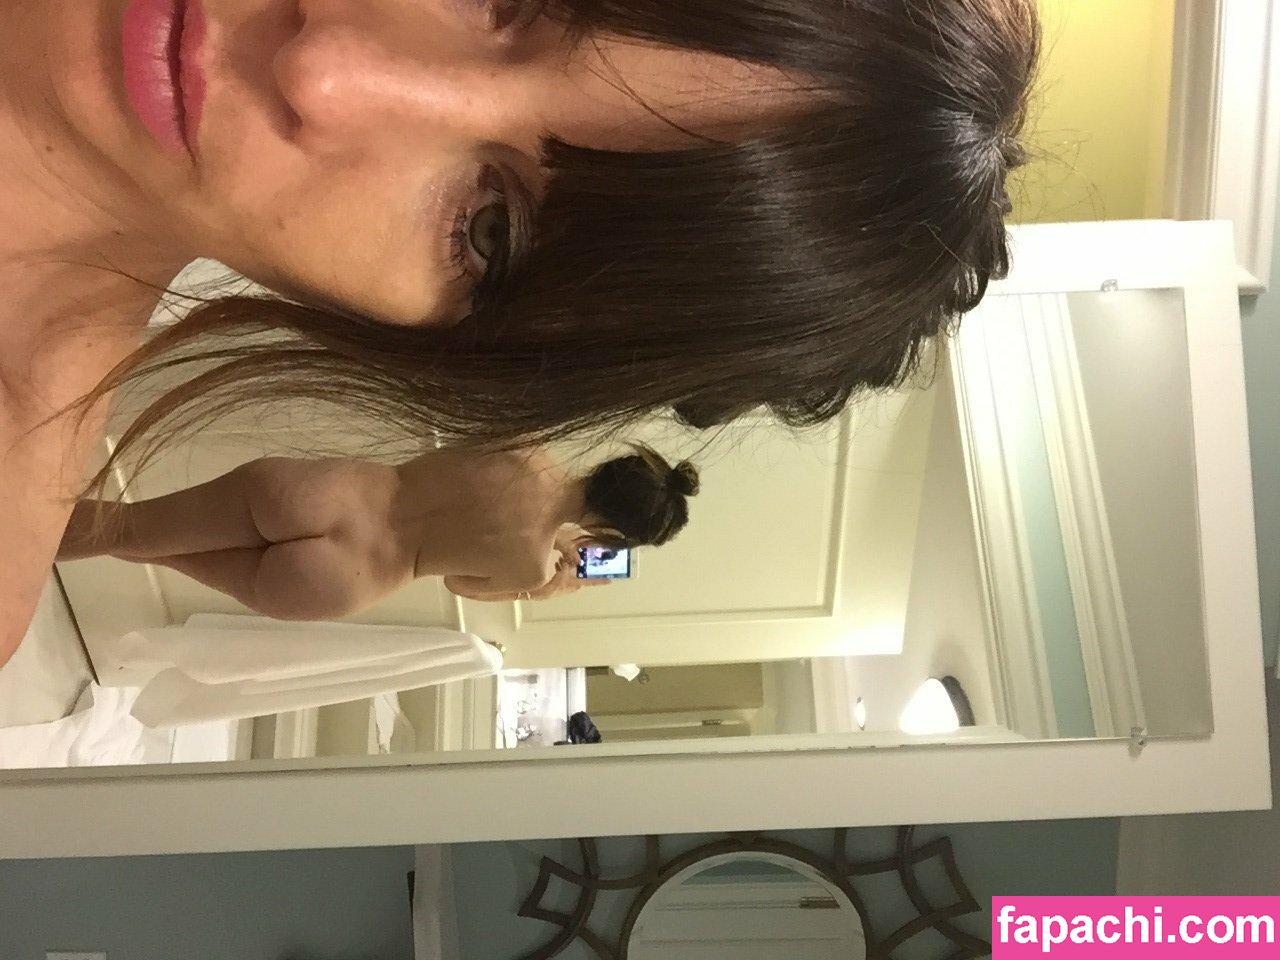 Natasha Leggero / natashaleggero leaked nude photo #0041 from OnlyFans/Patreon